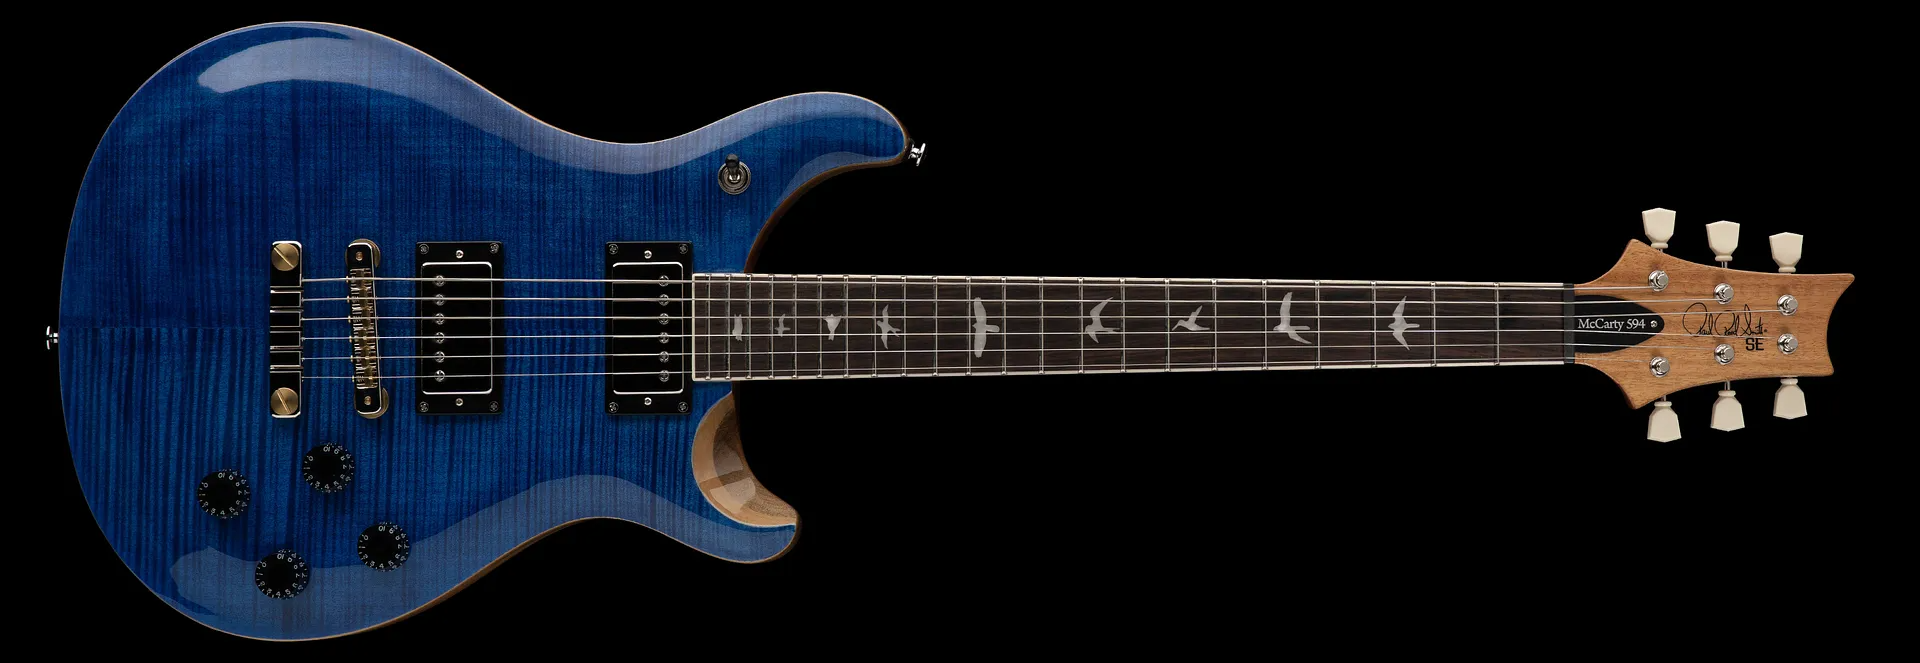 Prs Se Mccarty 594 2h Ht Rw - Faded Blue - Guitarra eléctrica de doble corte. - Variation 2